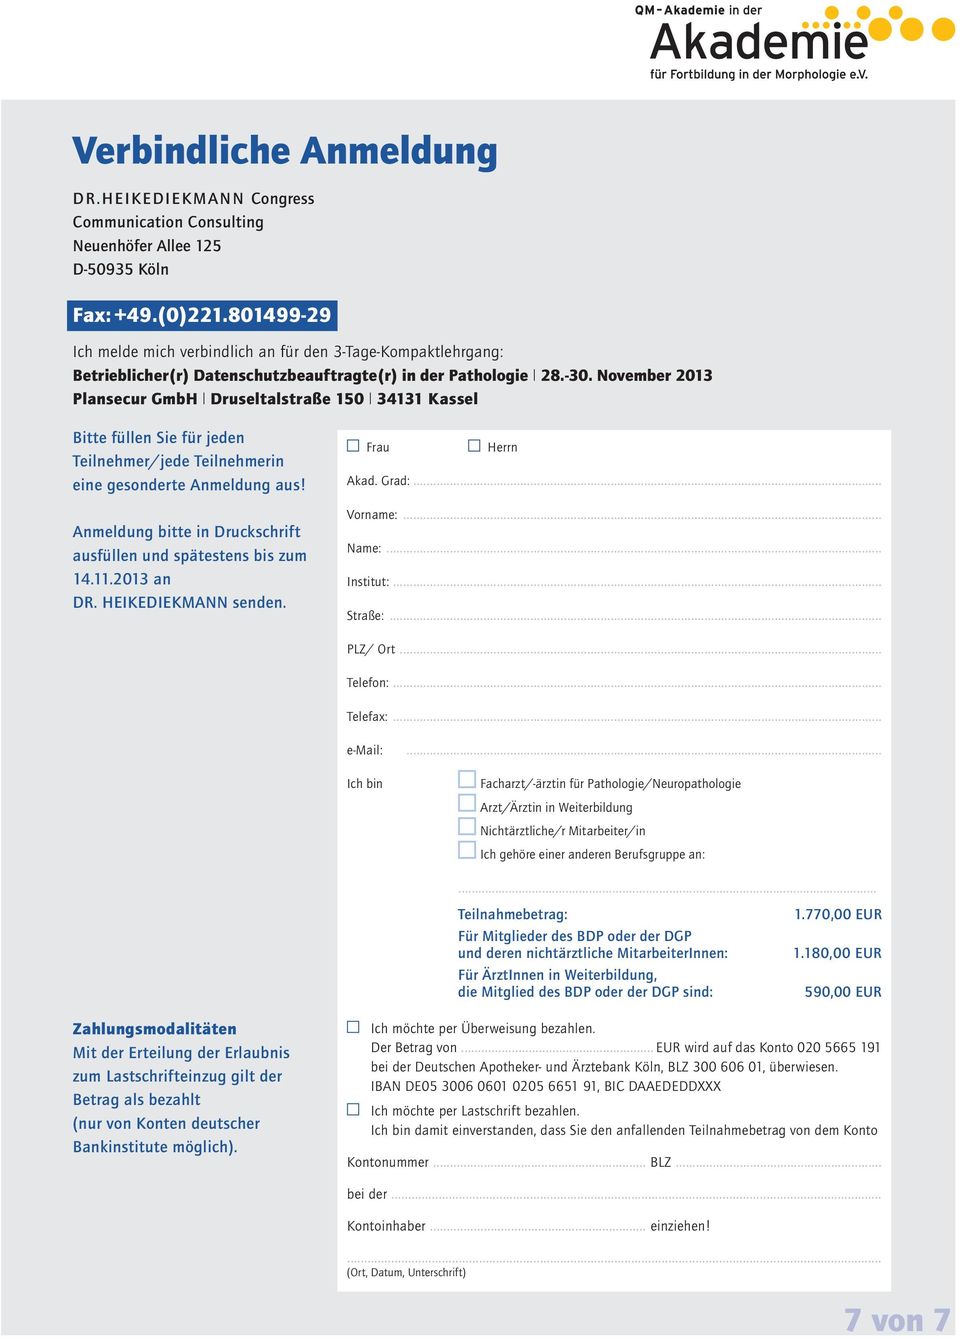 November 2013 Plansecur GmbH Druseltalstraße 150 34131 Kassel Bitte füllen Sie für jeden Teilnehmer/jede Teilnehmerin eine gesonderte Anmeldung aus!